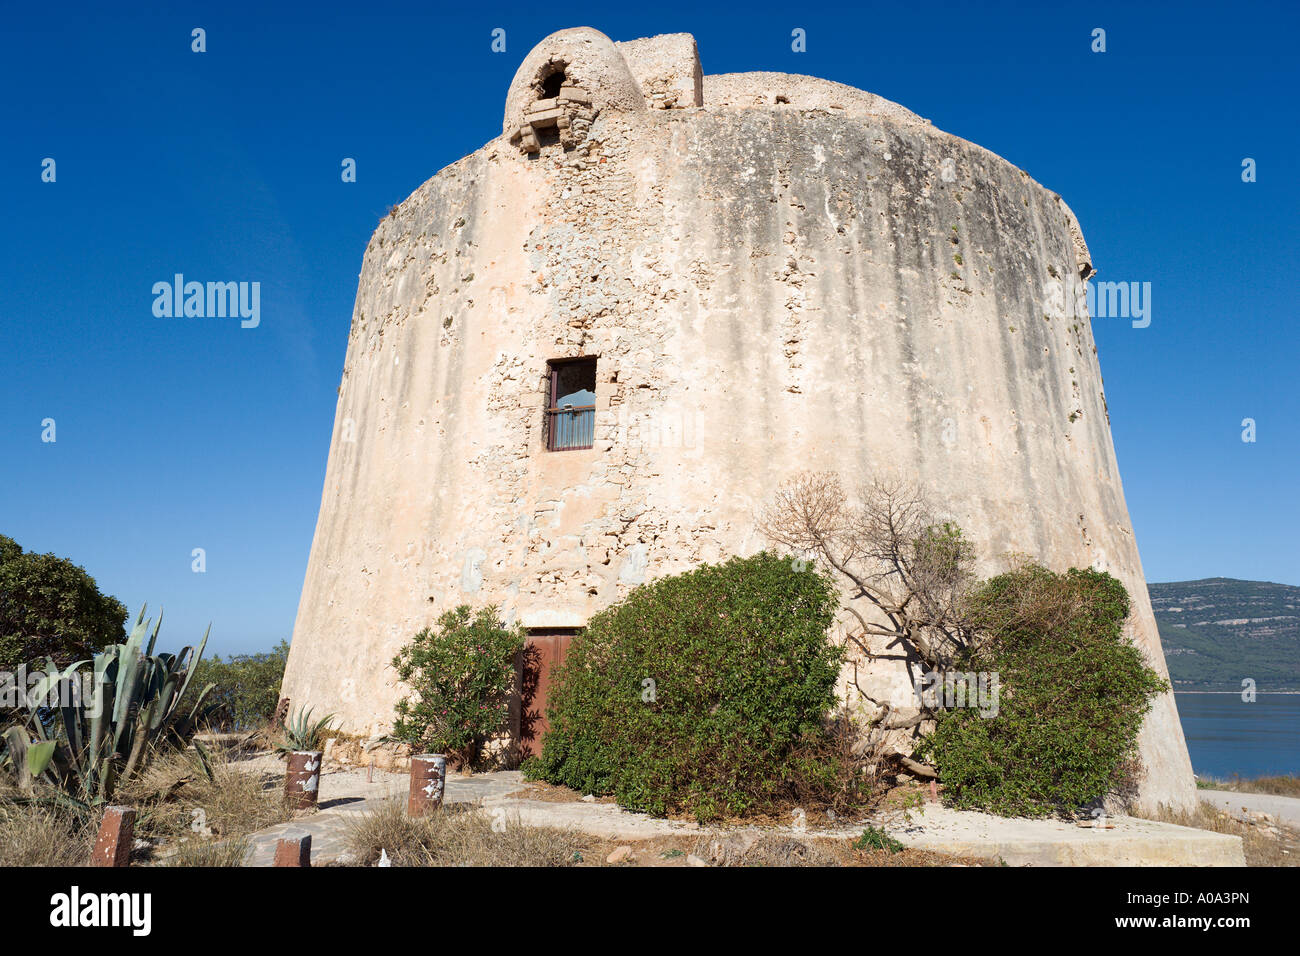 Historic Tower in der Nähe von Hotel El Faro, Porto Conte, Nymphen Bay, Alghero, Sardinien, Italien Stockfoto